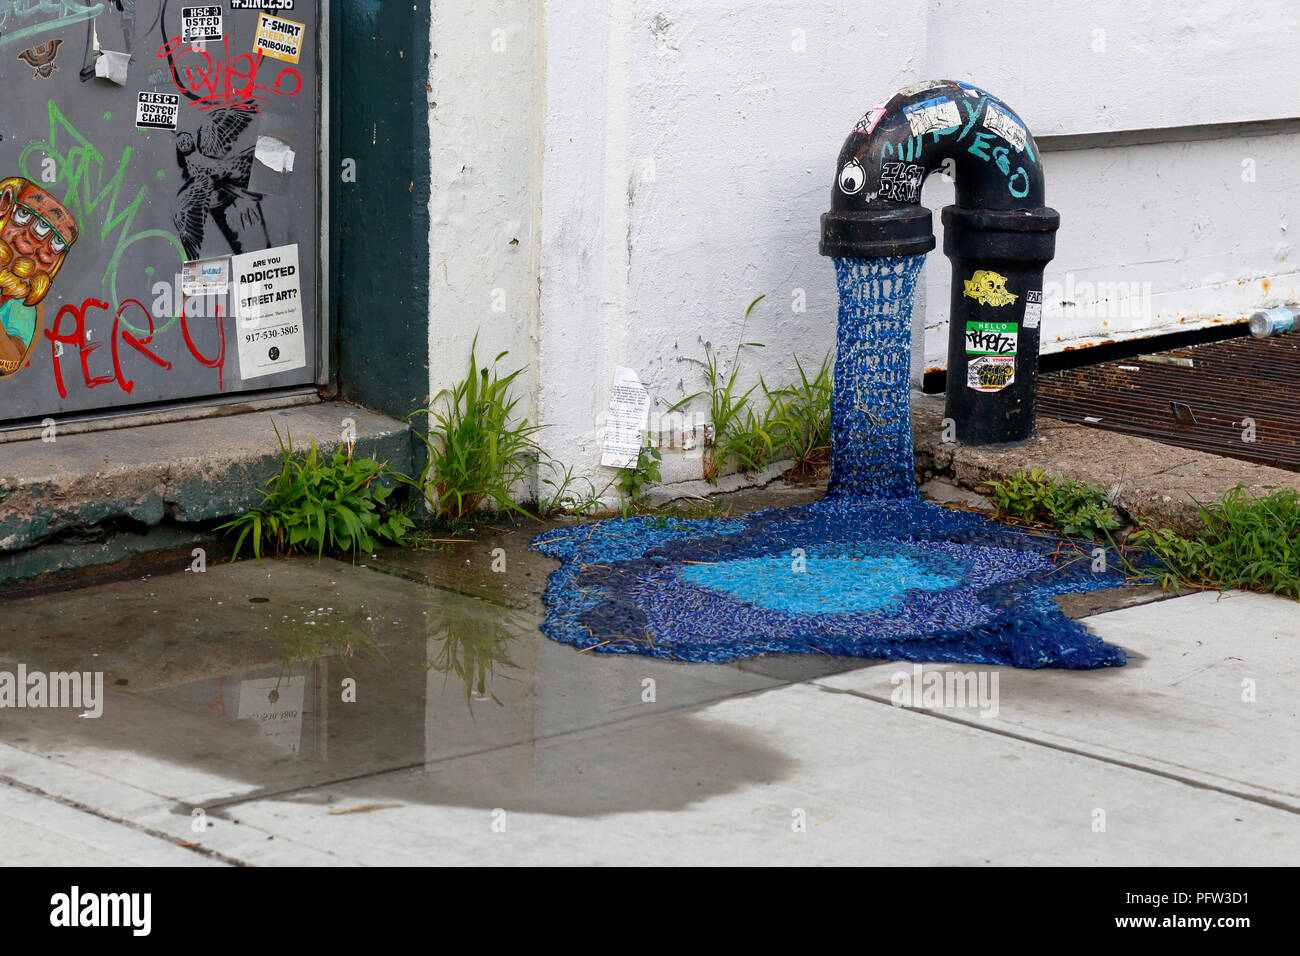 Häkeln Sie Street Art oder Garn Bombing von der Künstlerin London Kaye in Bushwick, Brooklyn, New York Stockfoto